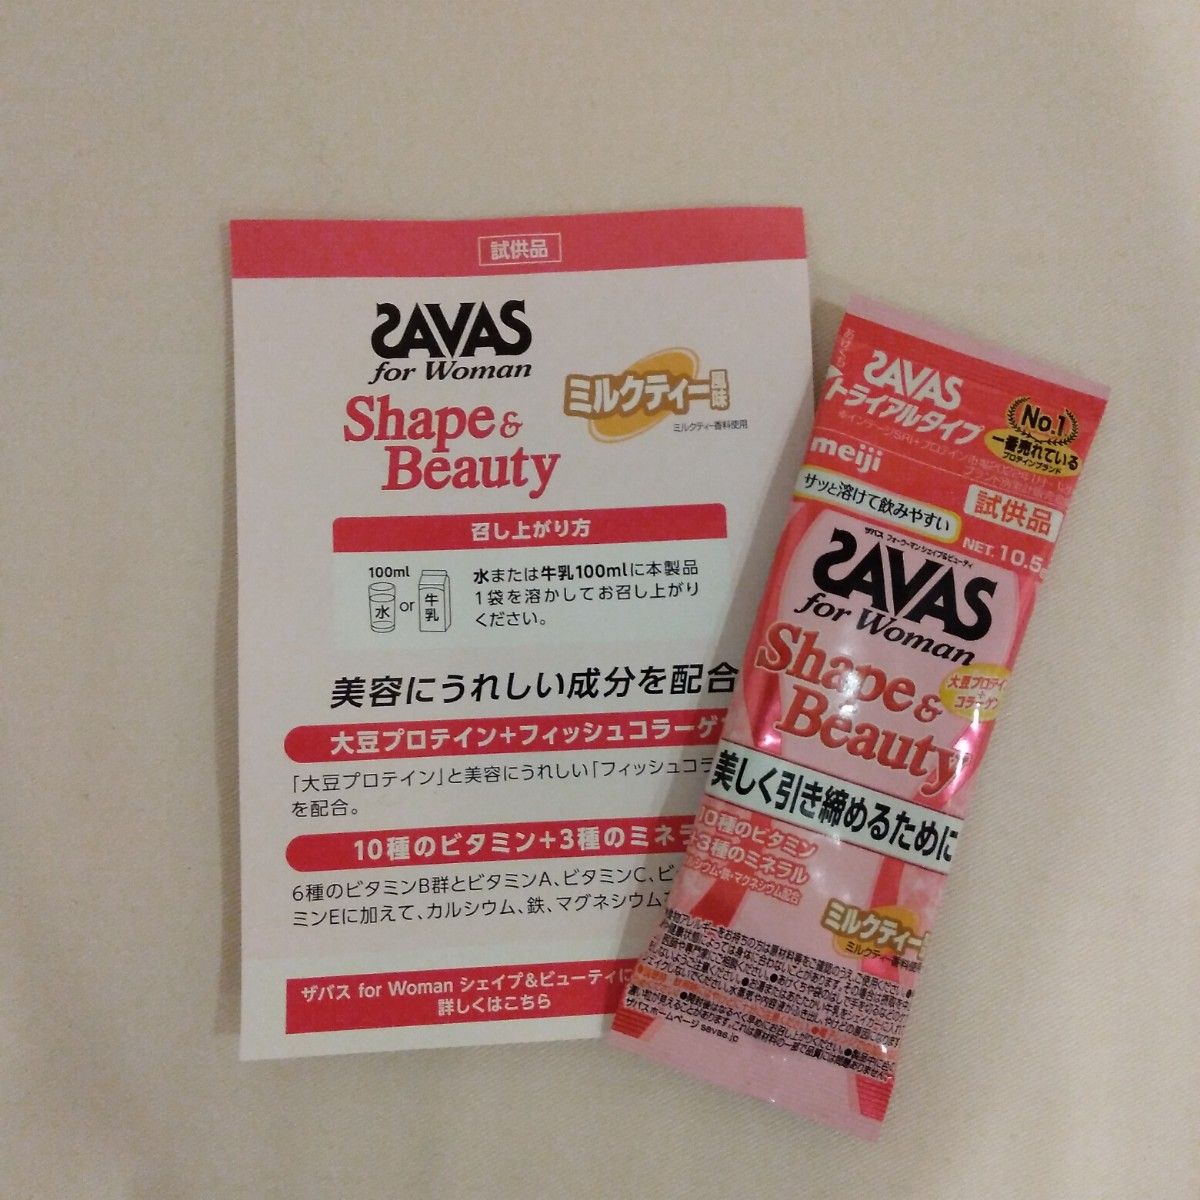 SAVAS for Woman シェイプ＆ビューティ ミルクティー風味